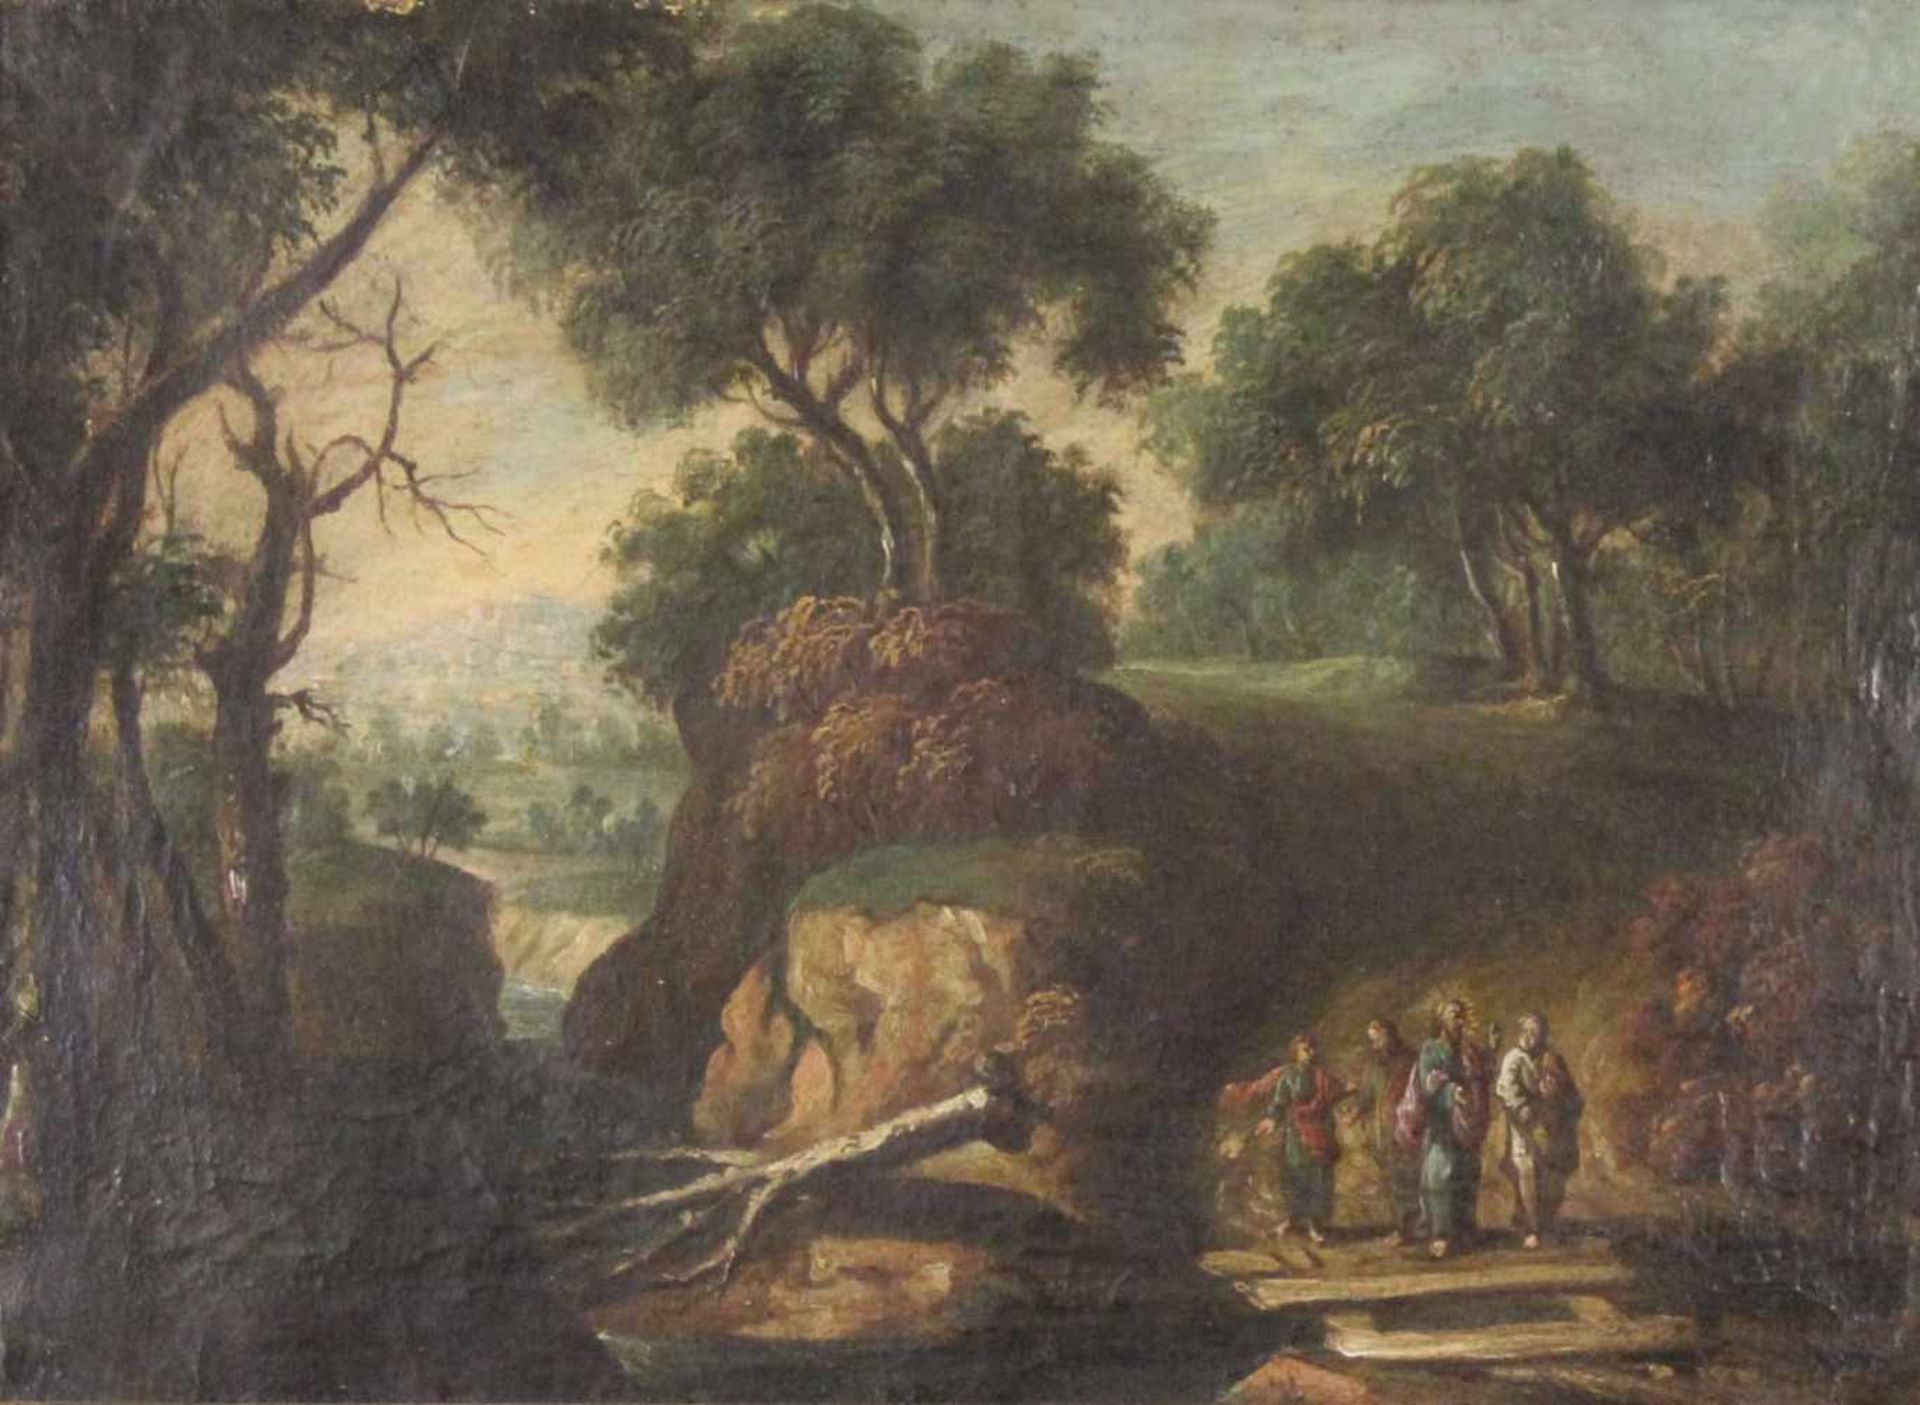 UNSIGNIERT (XVII - XVIII). Jesus mit drei Jüngern. 30 cm x 41 cm. Gemälde. Öl auf Leinwand. UNSIGNED